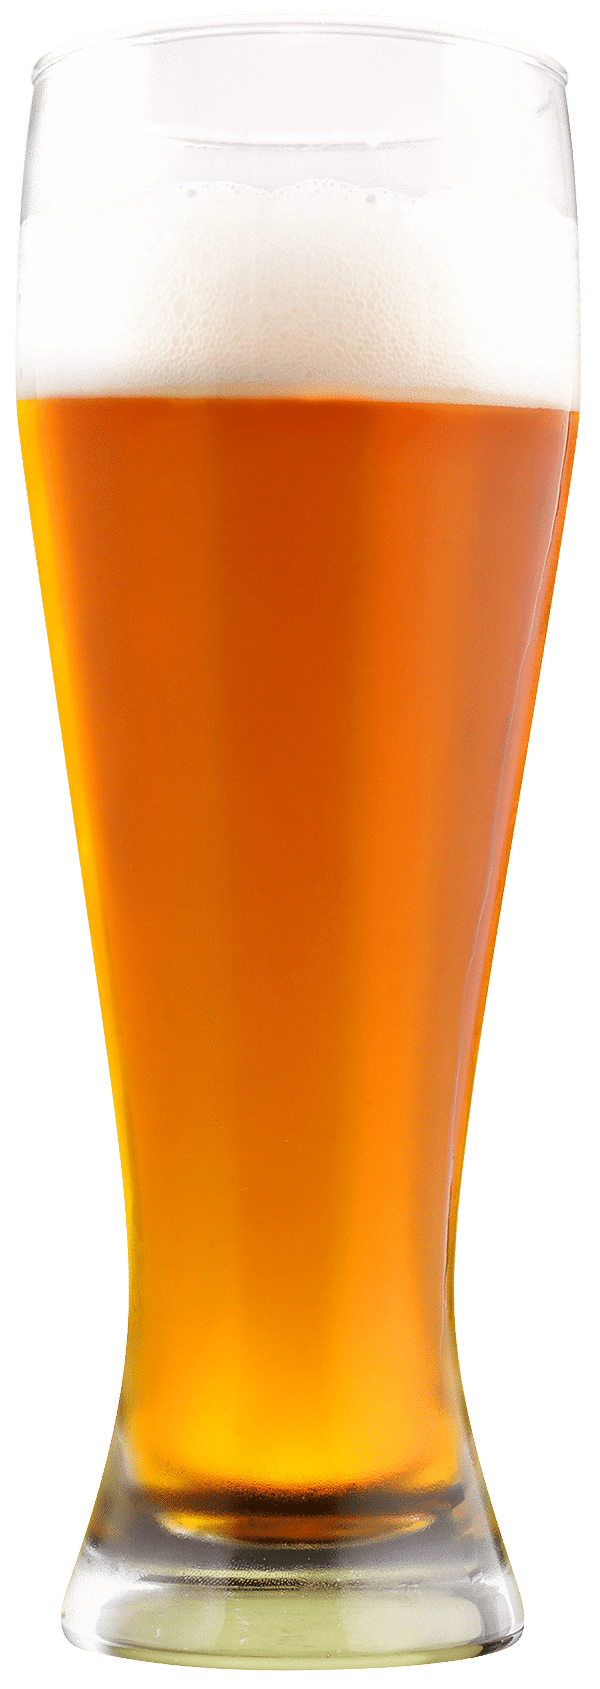 glass of Hangar 24 Beer